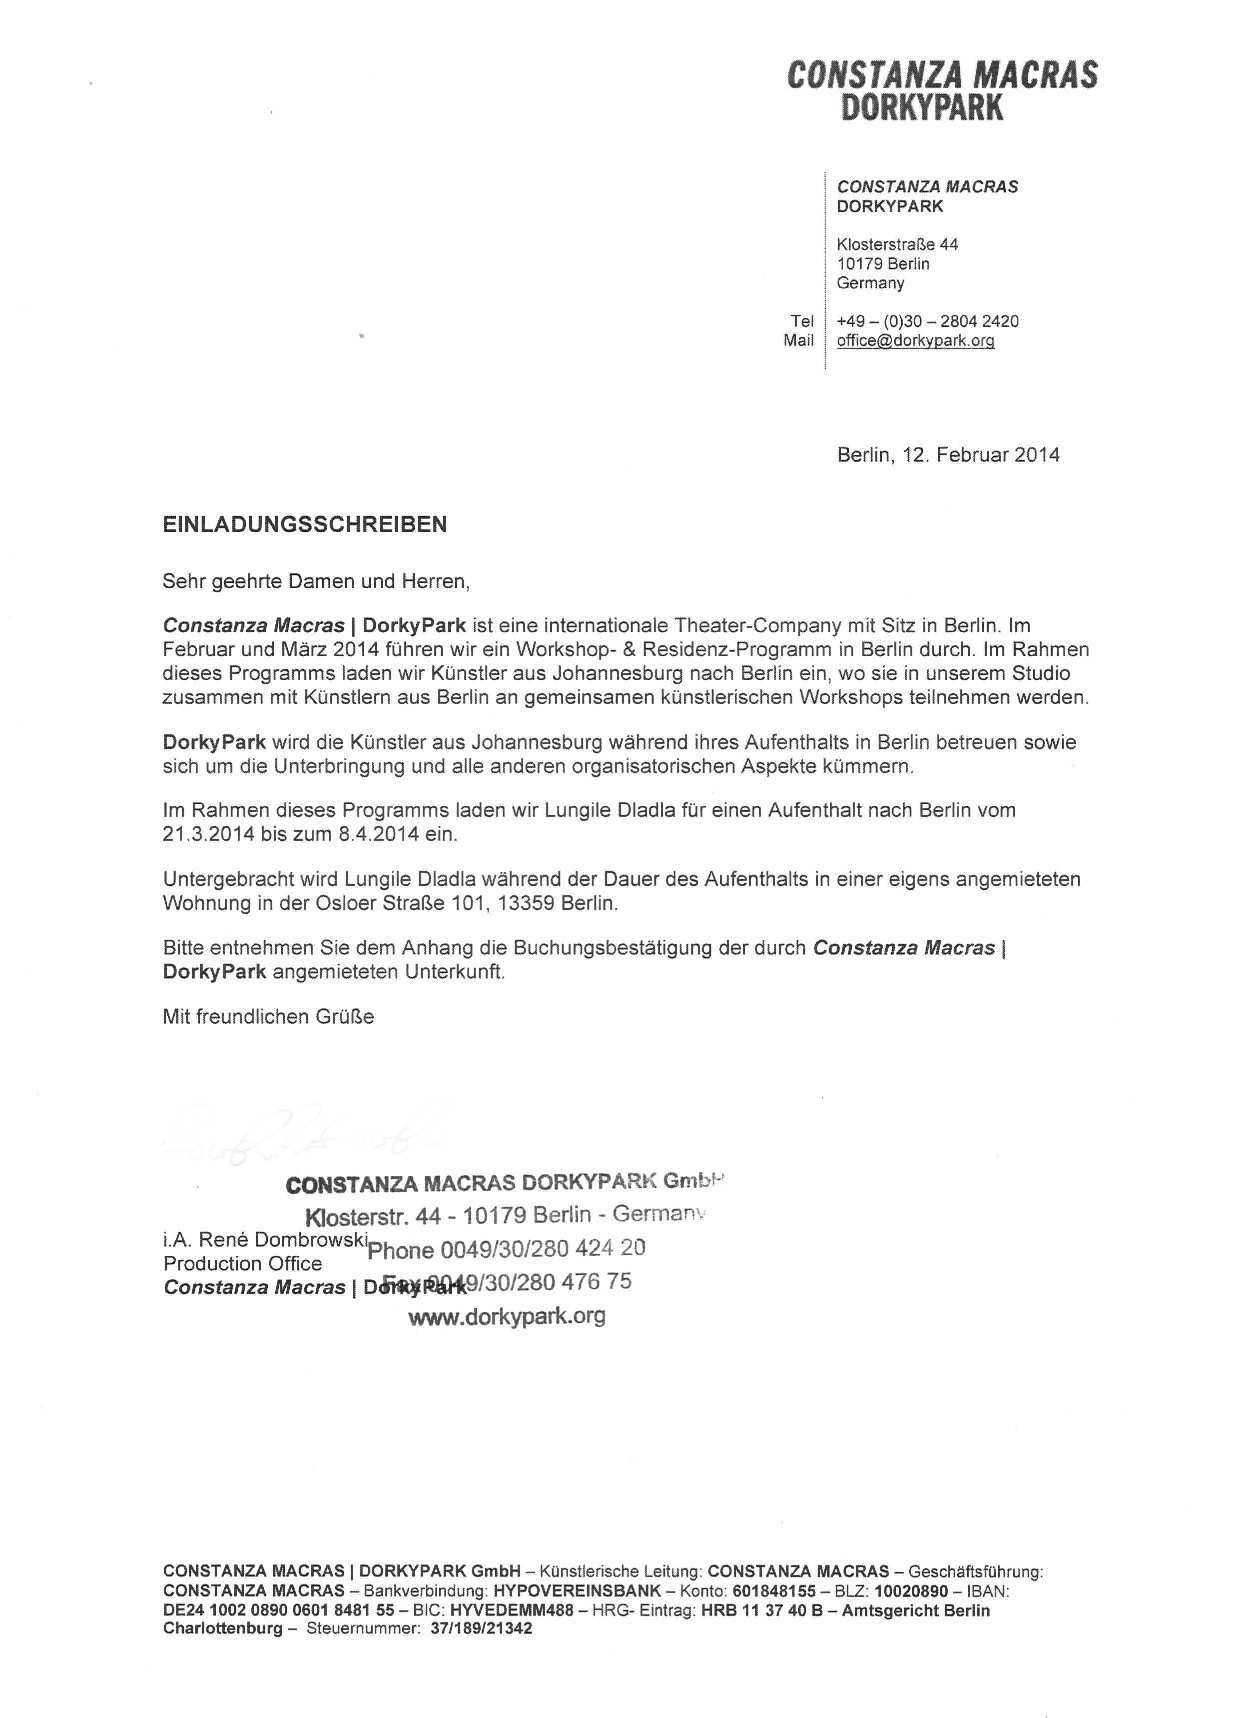 27 March 27: Black lesbian denied Schengen visa by German